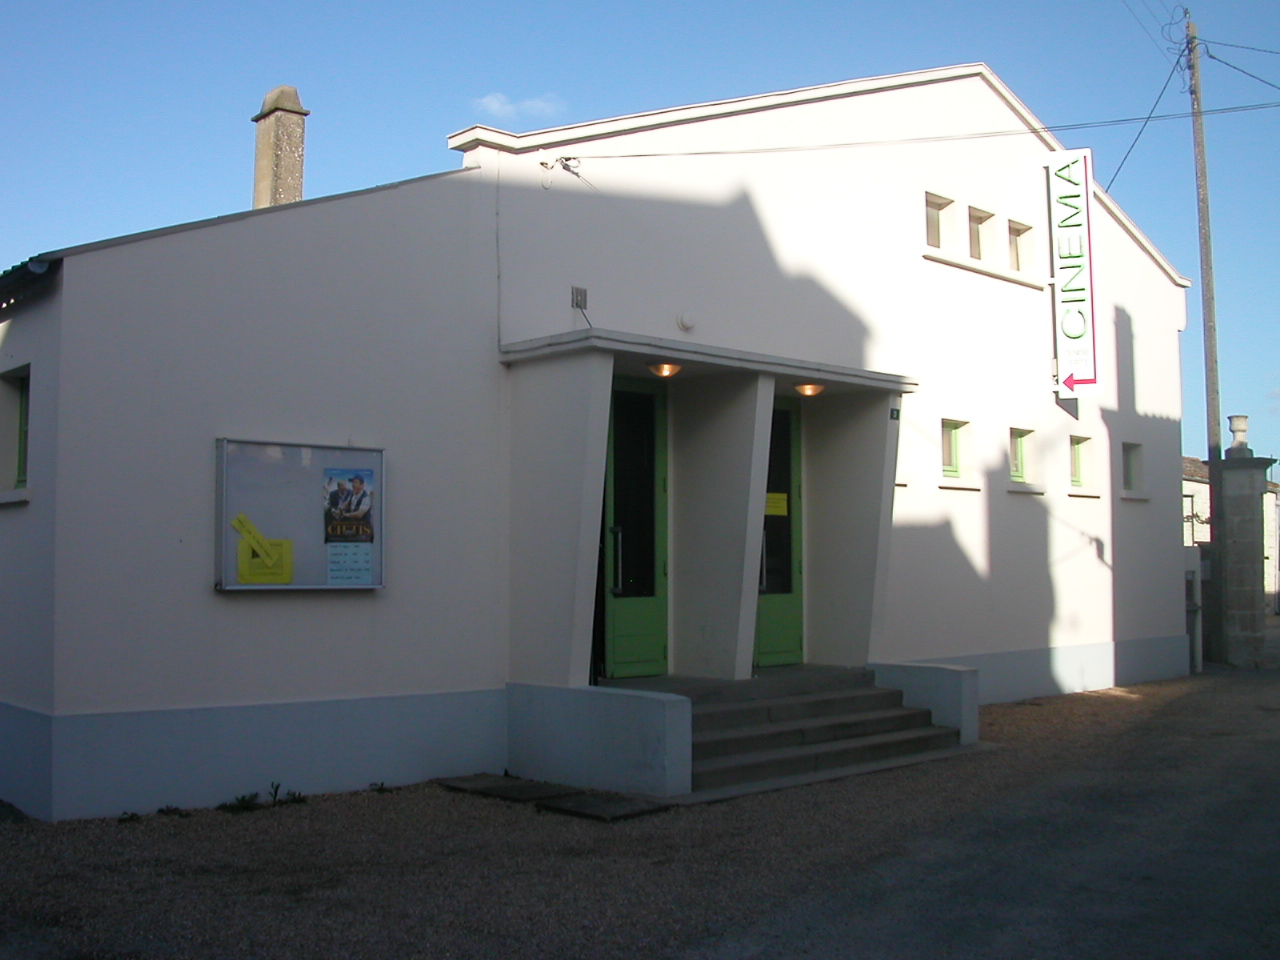 Cinéma La Vanise Verte, St-Hilaire-la-Palud